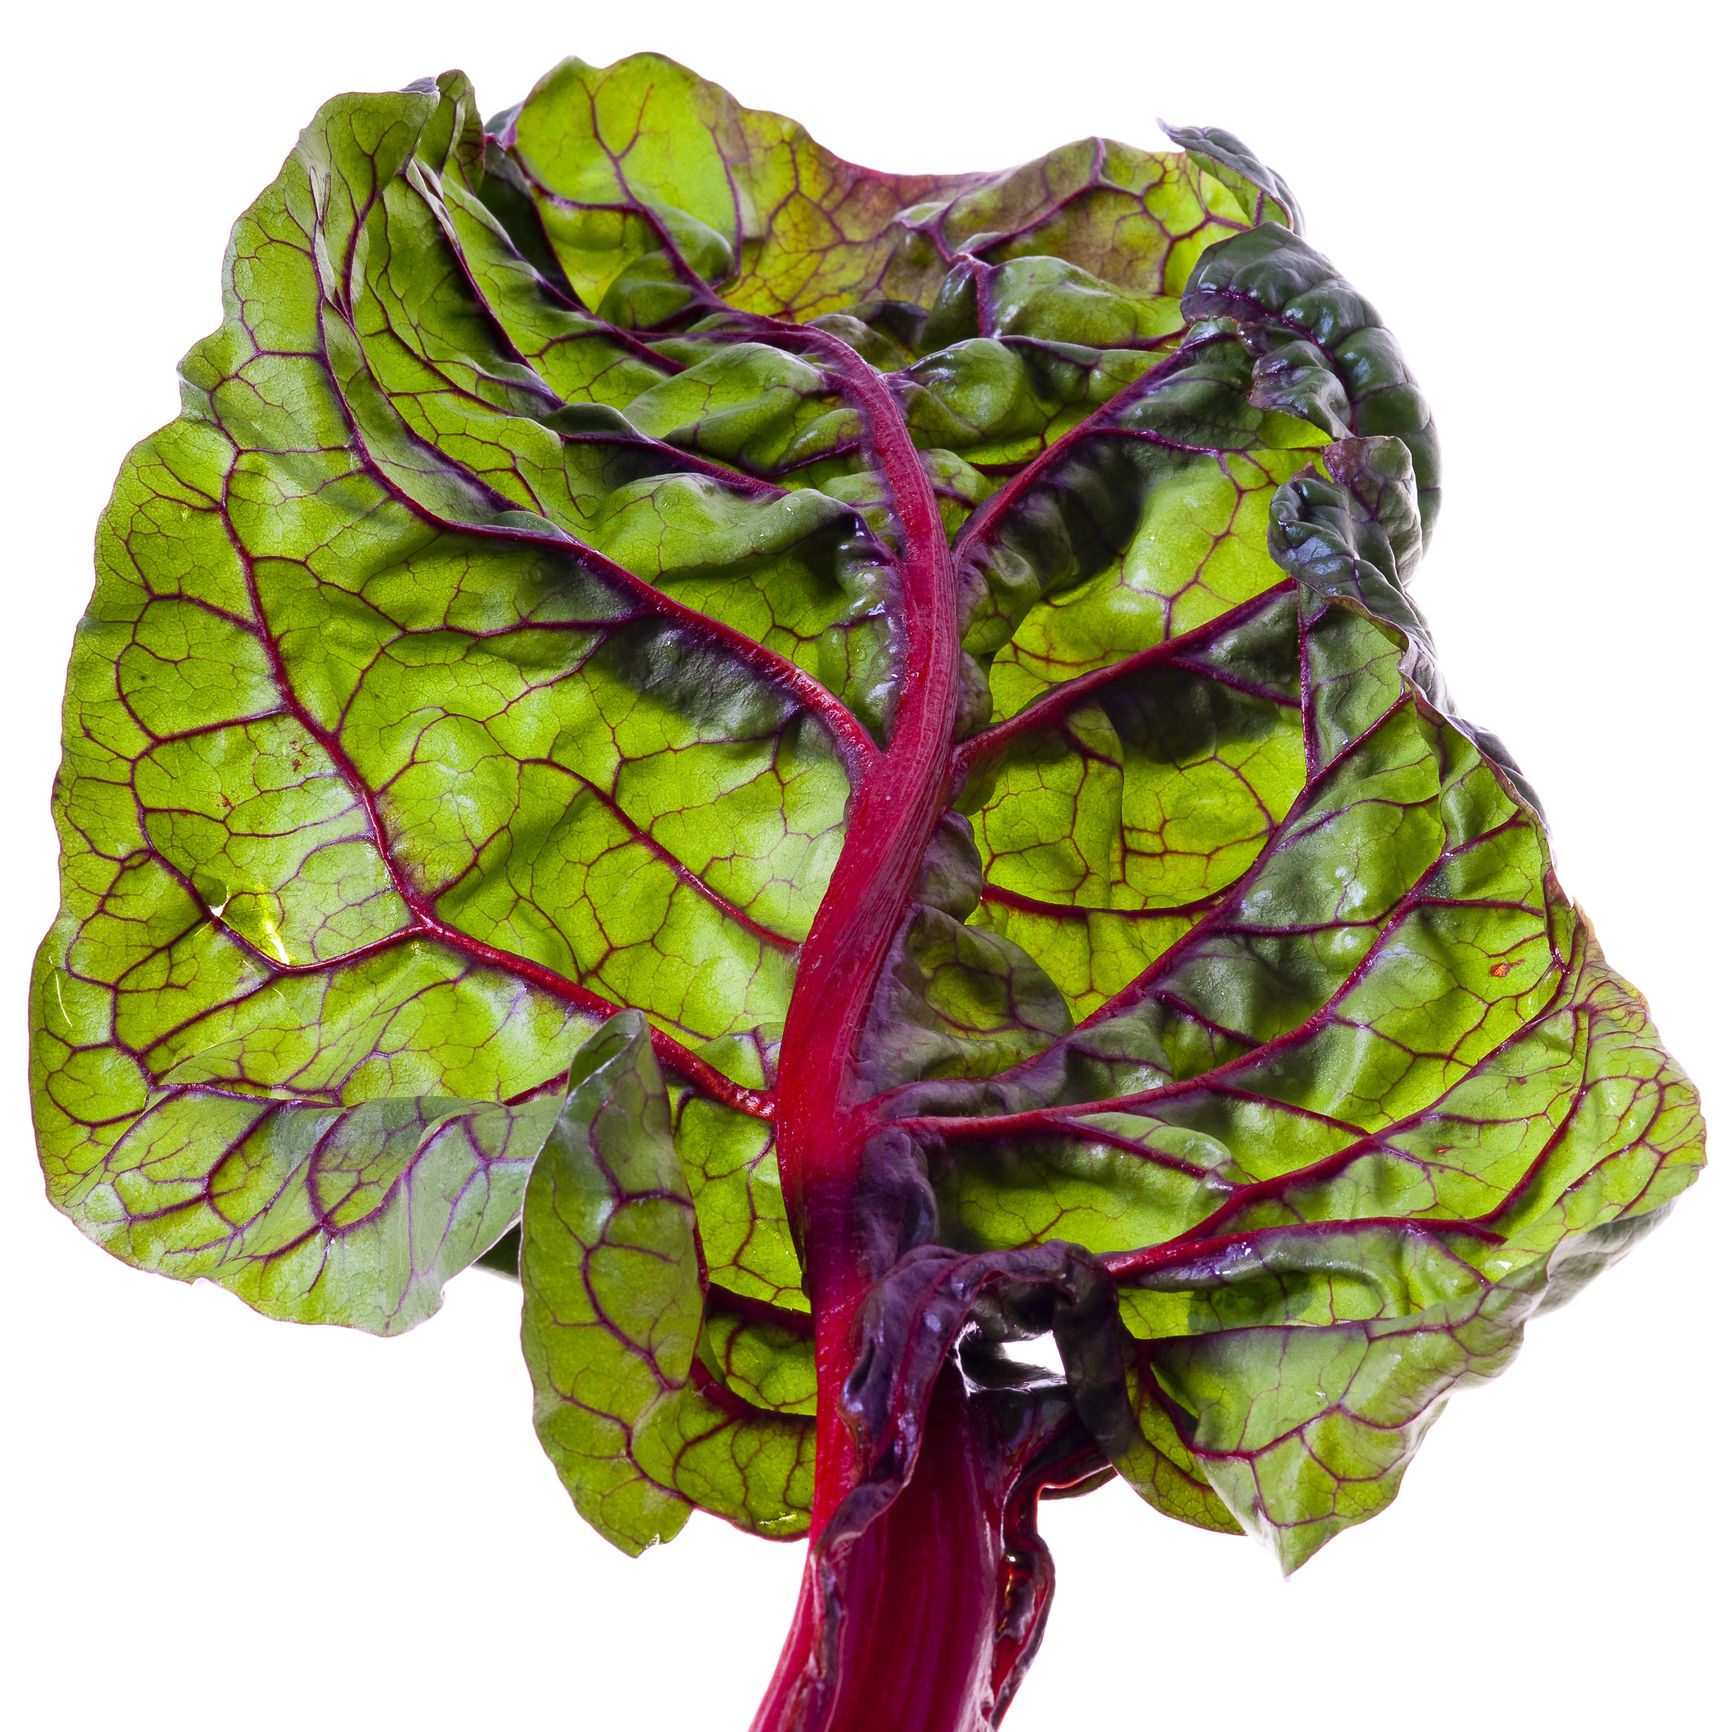 Chard, Leaf vegetable, Vegetable, Red leaf lettuce, Leaf, Plant, Beet greens, Flower, Collard greens, Lettuce, 